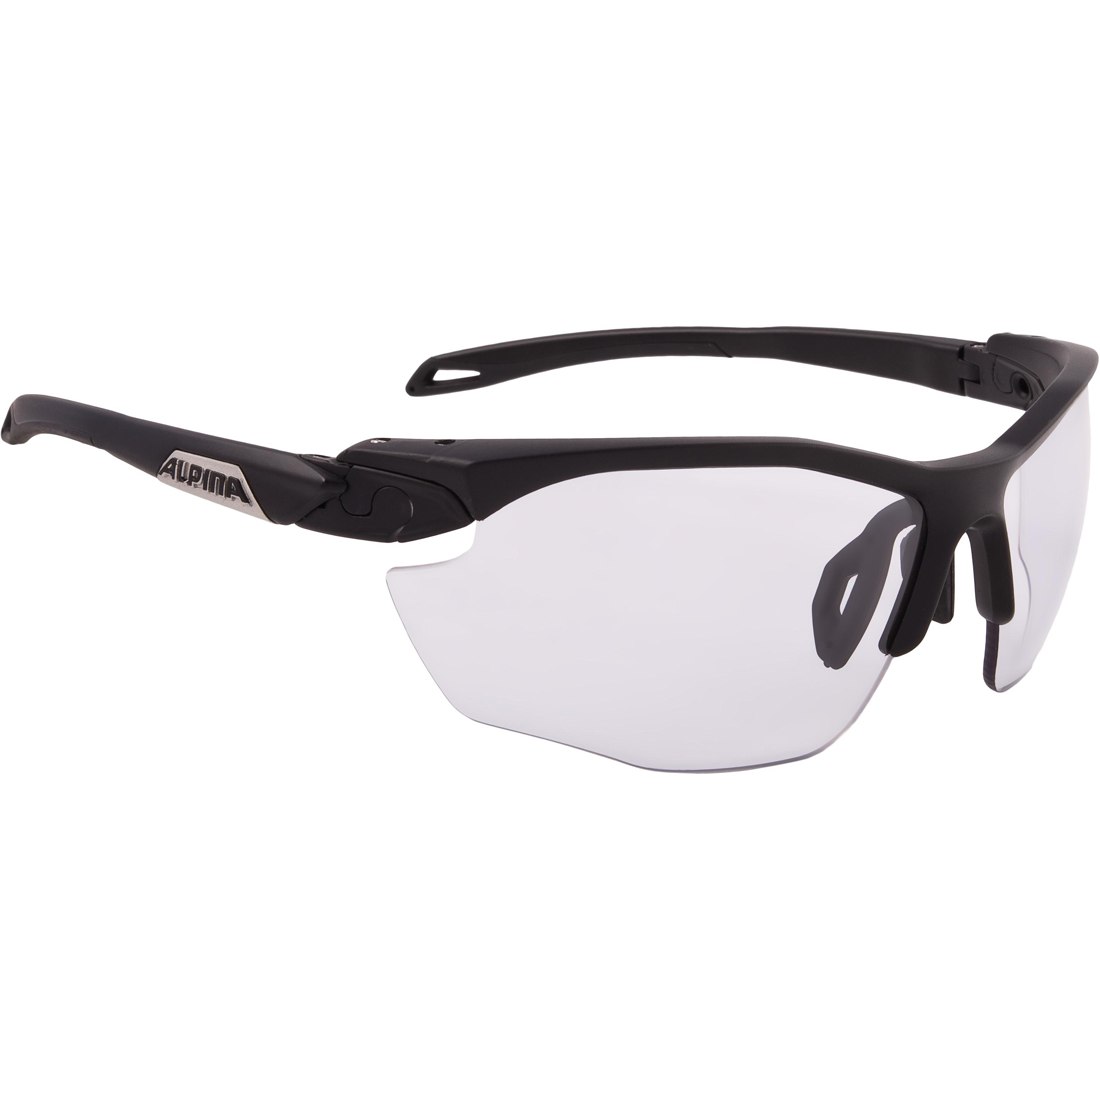 Produktbild von Alpina Twist Five HR V Brille - black matt/Varioflex black